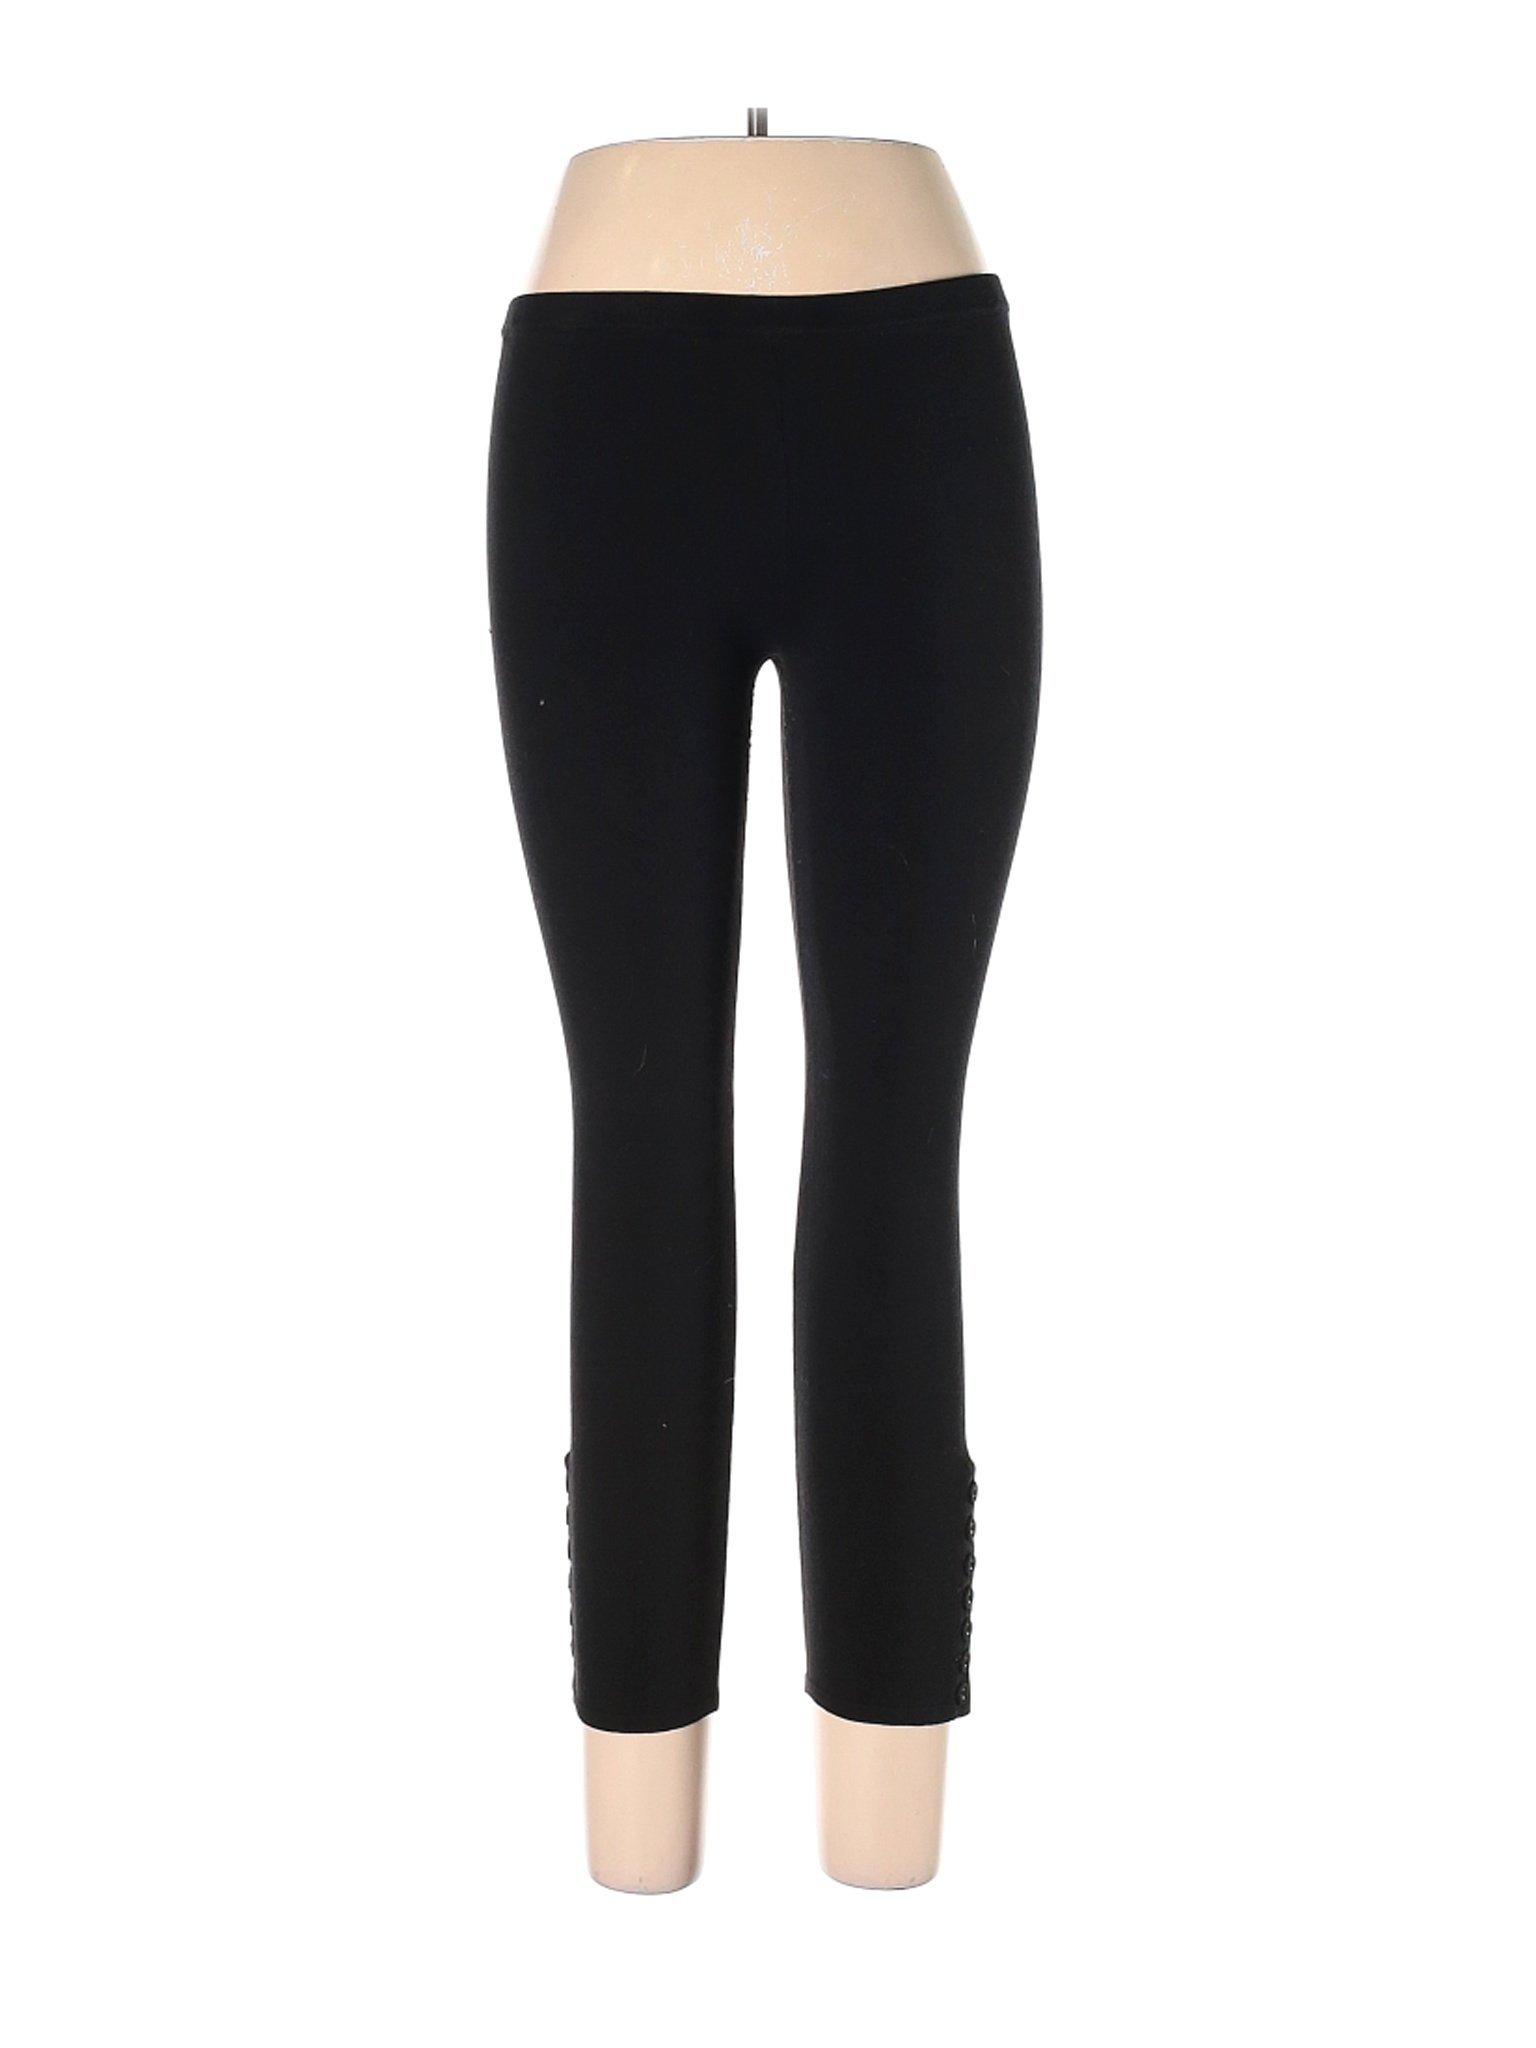 Twenty One Women Black Casual Pants L | eBay